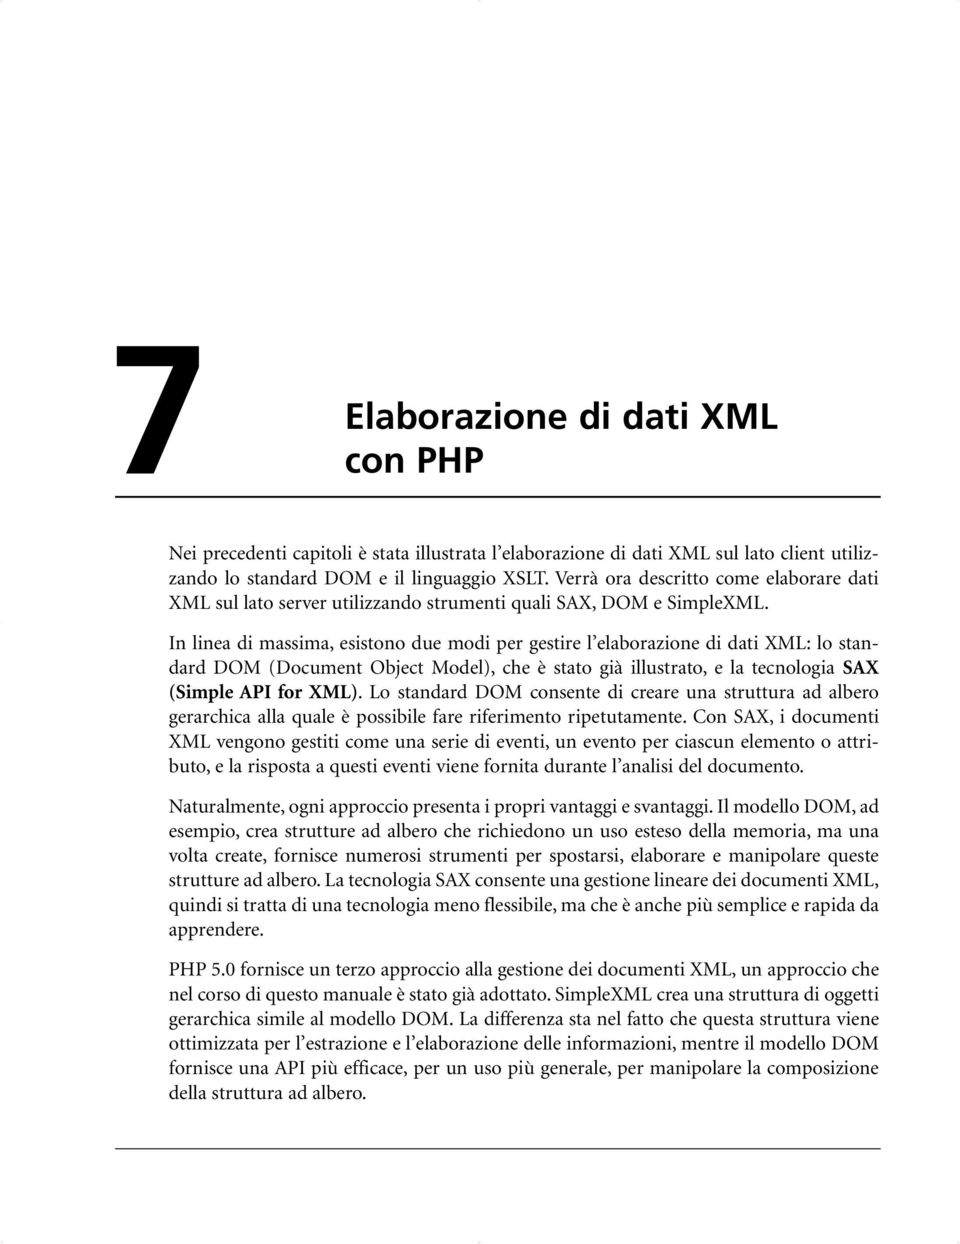 In linea di massima, esistono due modi per gestire l elaborazione di dati XML: lo standard DOM (Document Object Model), che è stato già illustrato, e la tecnologia SAX (Simple API for XML).